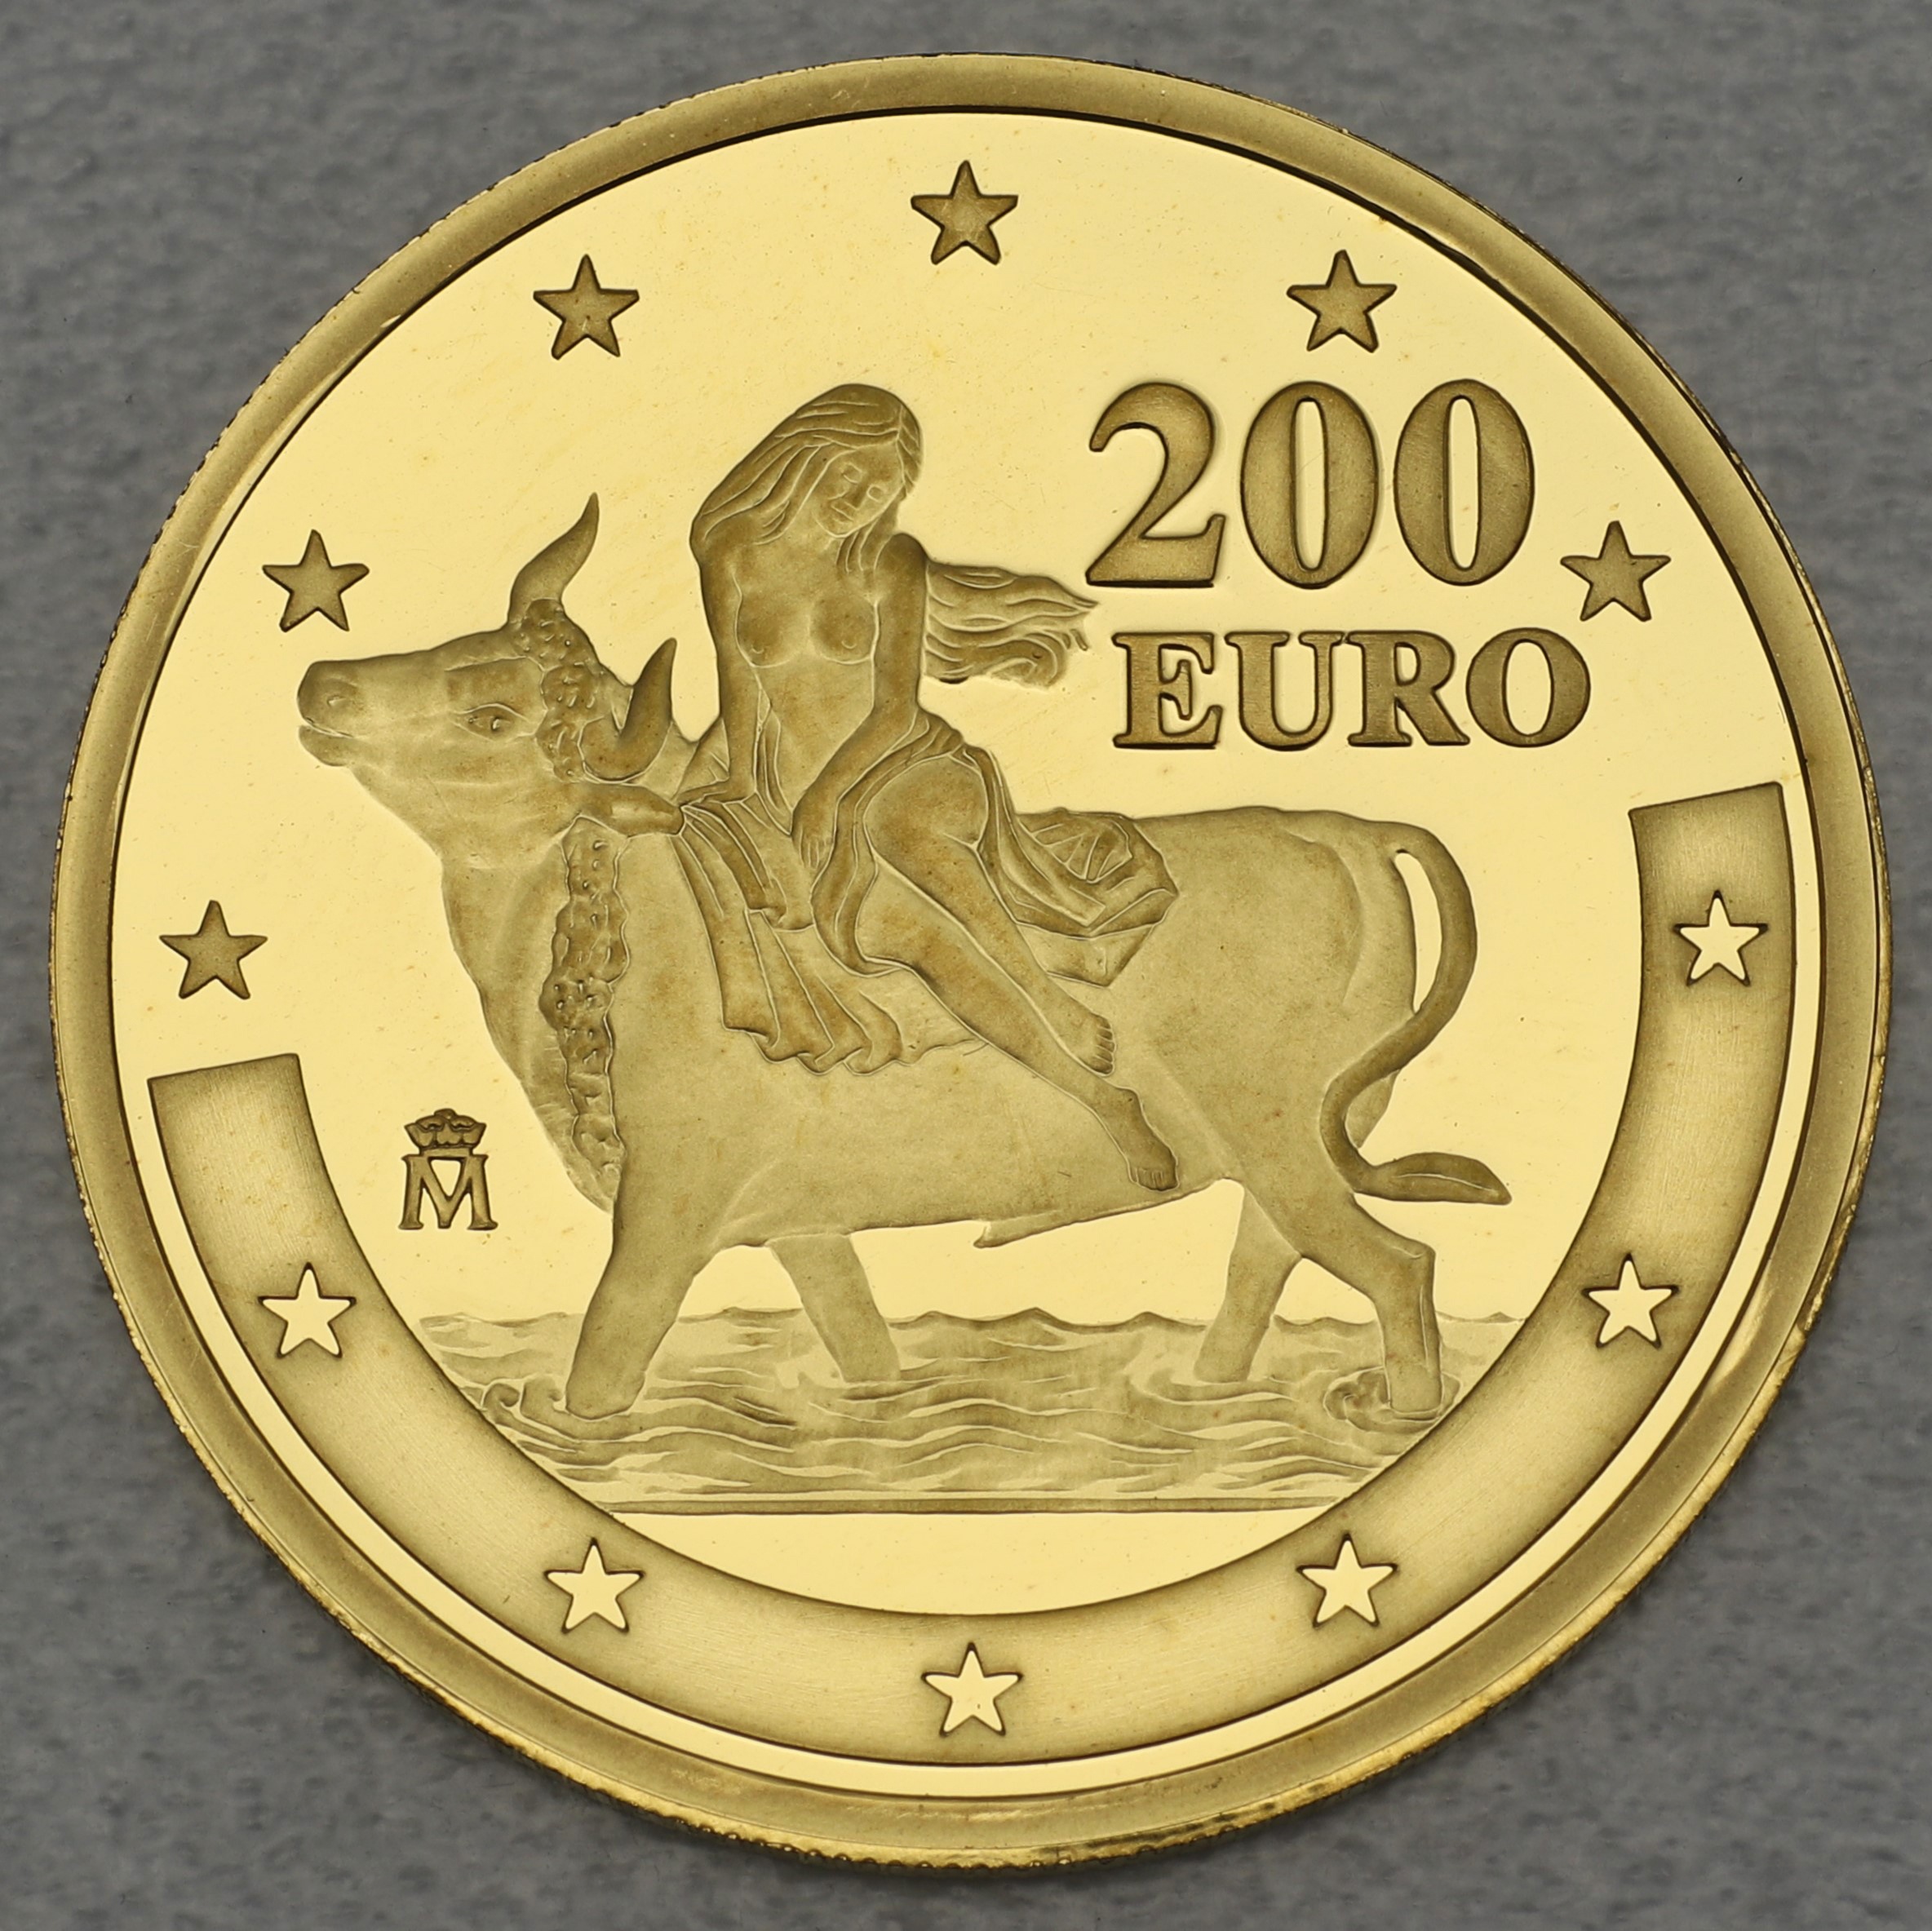 Goldmünze 200 Euro - 2003 Göttin Europa (PP) Jahrestag Euroeinführung Spanien/Europa auf Stier